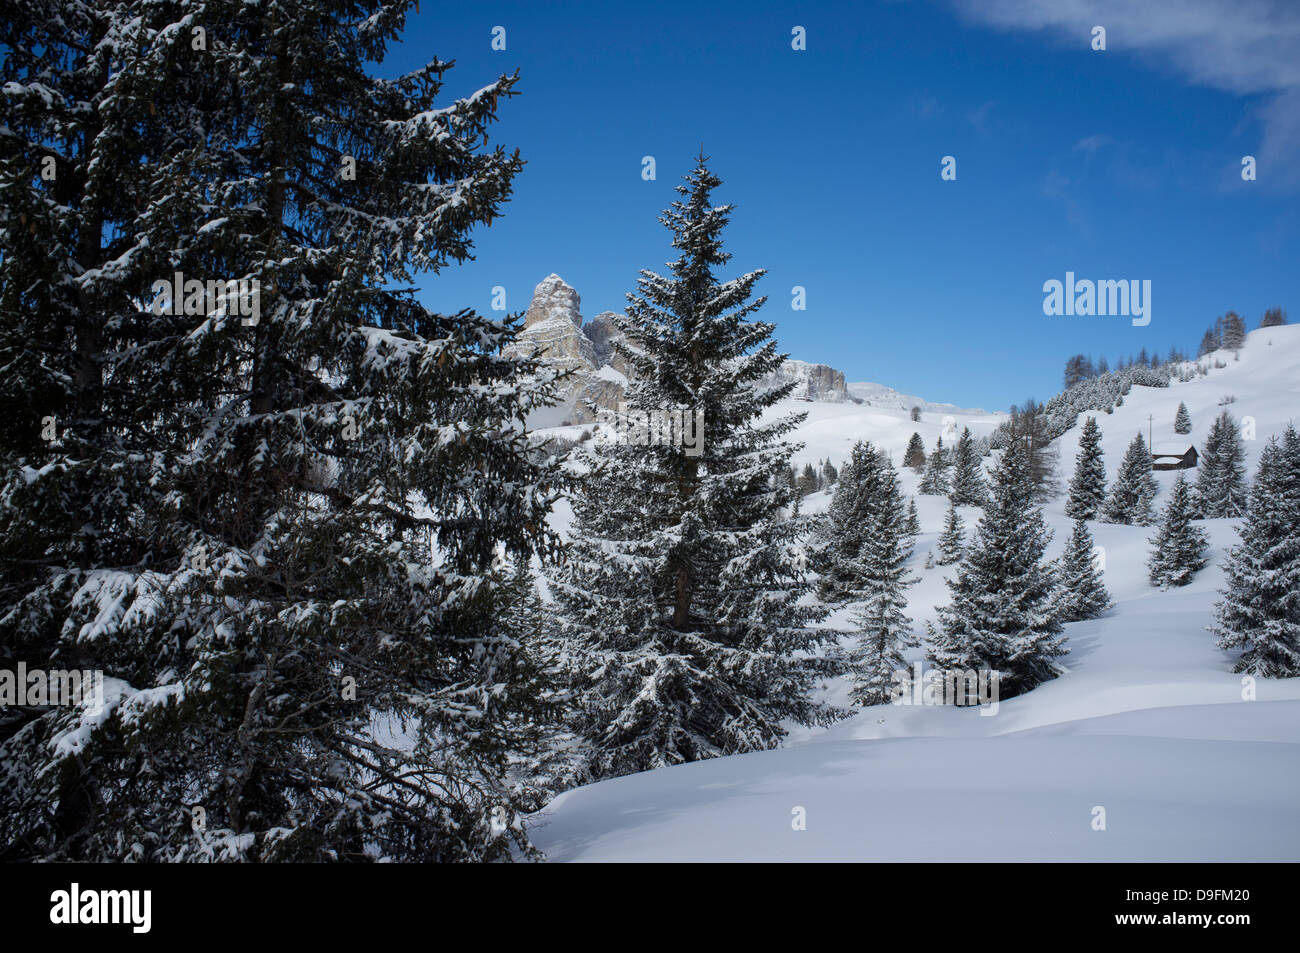 Sassongher Mountain vue à travers les arbres couverts de neige à la station de ski Alta Badia près de Corvara, Dolomites, Tyrol du Sud, Italie Banque D'Images